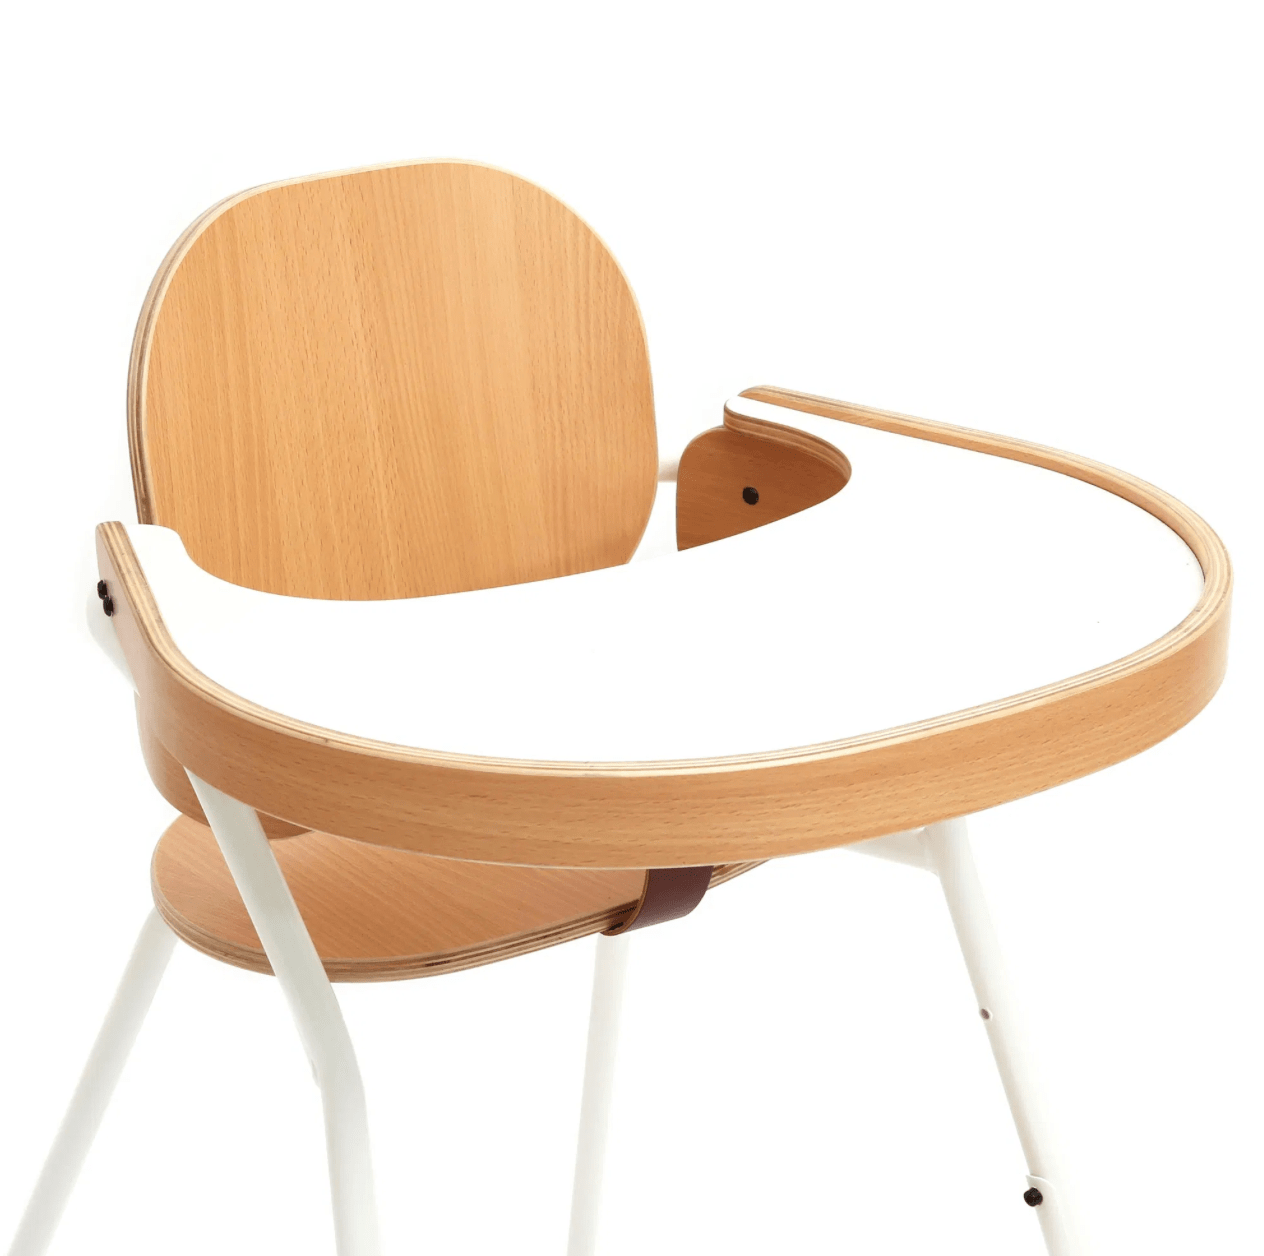 Charlie Crane TIBU Chair Table Tray, en del av kategorien Furniture - At Home Interiør